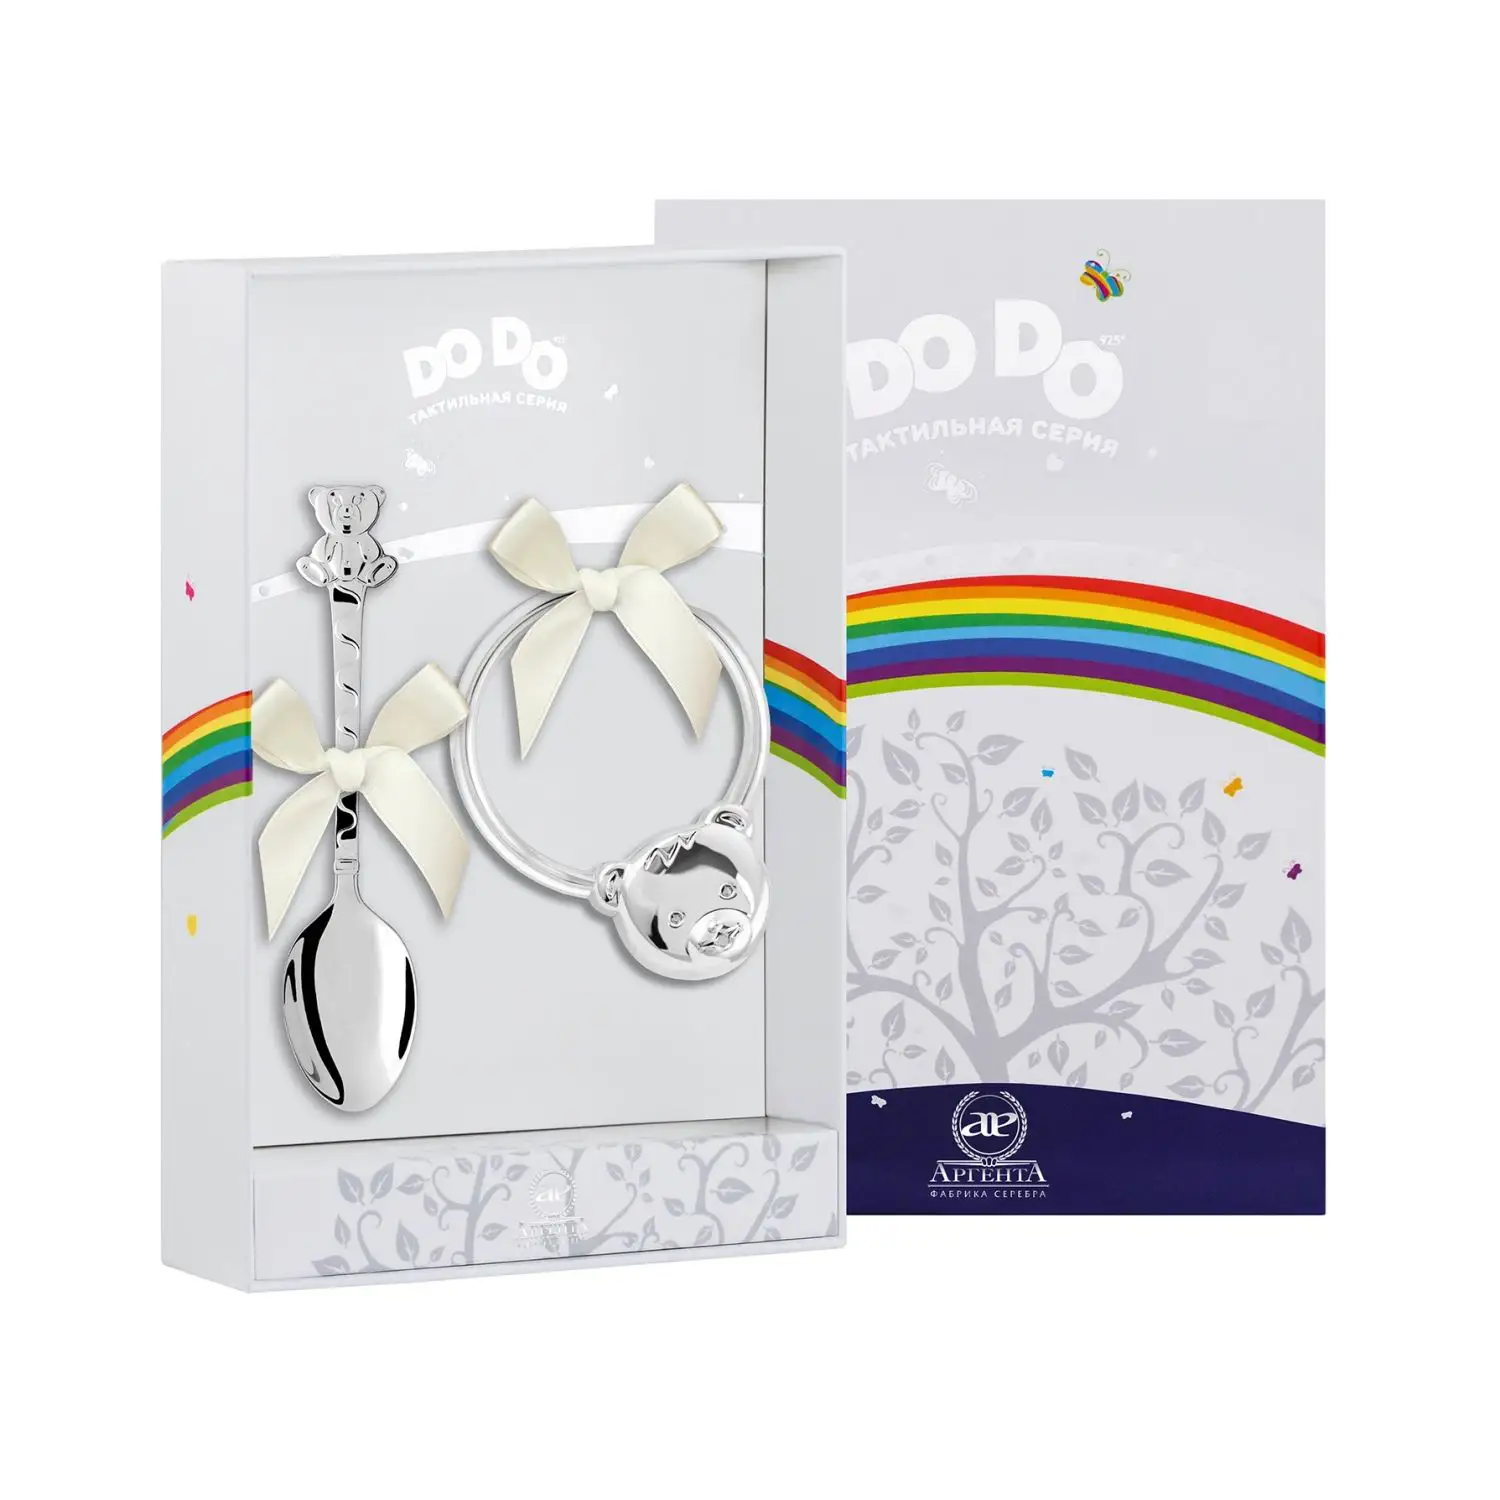 Набор для малышей DODO Мишка: ложка и погремушка (Серебро 925) набор для малышей dodo машинка ложка и погремушка серебро 925